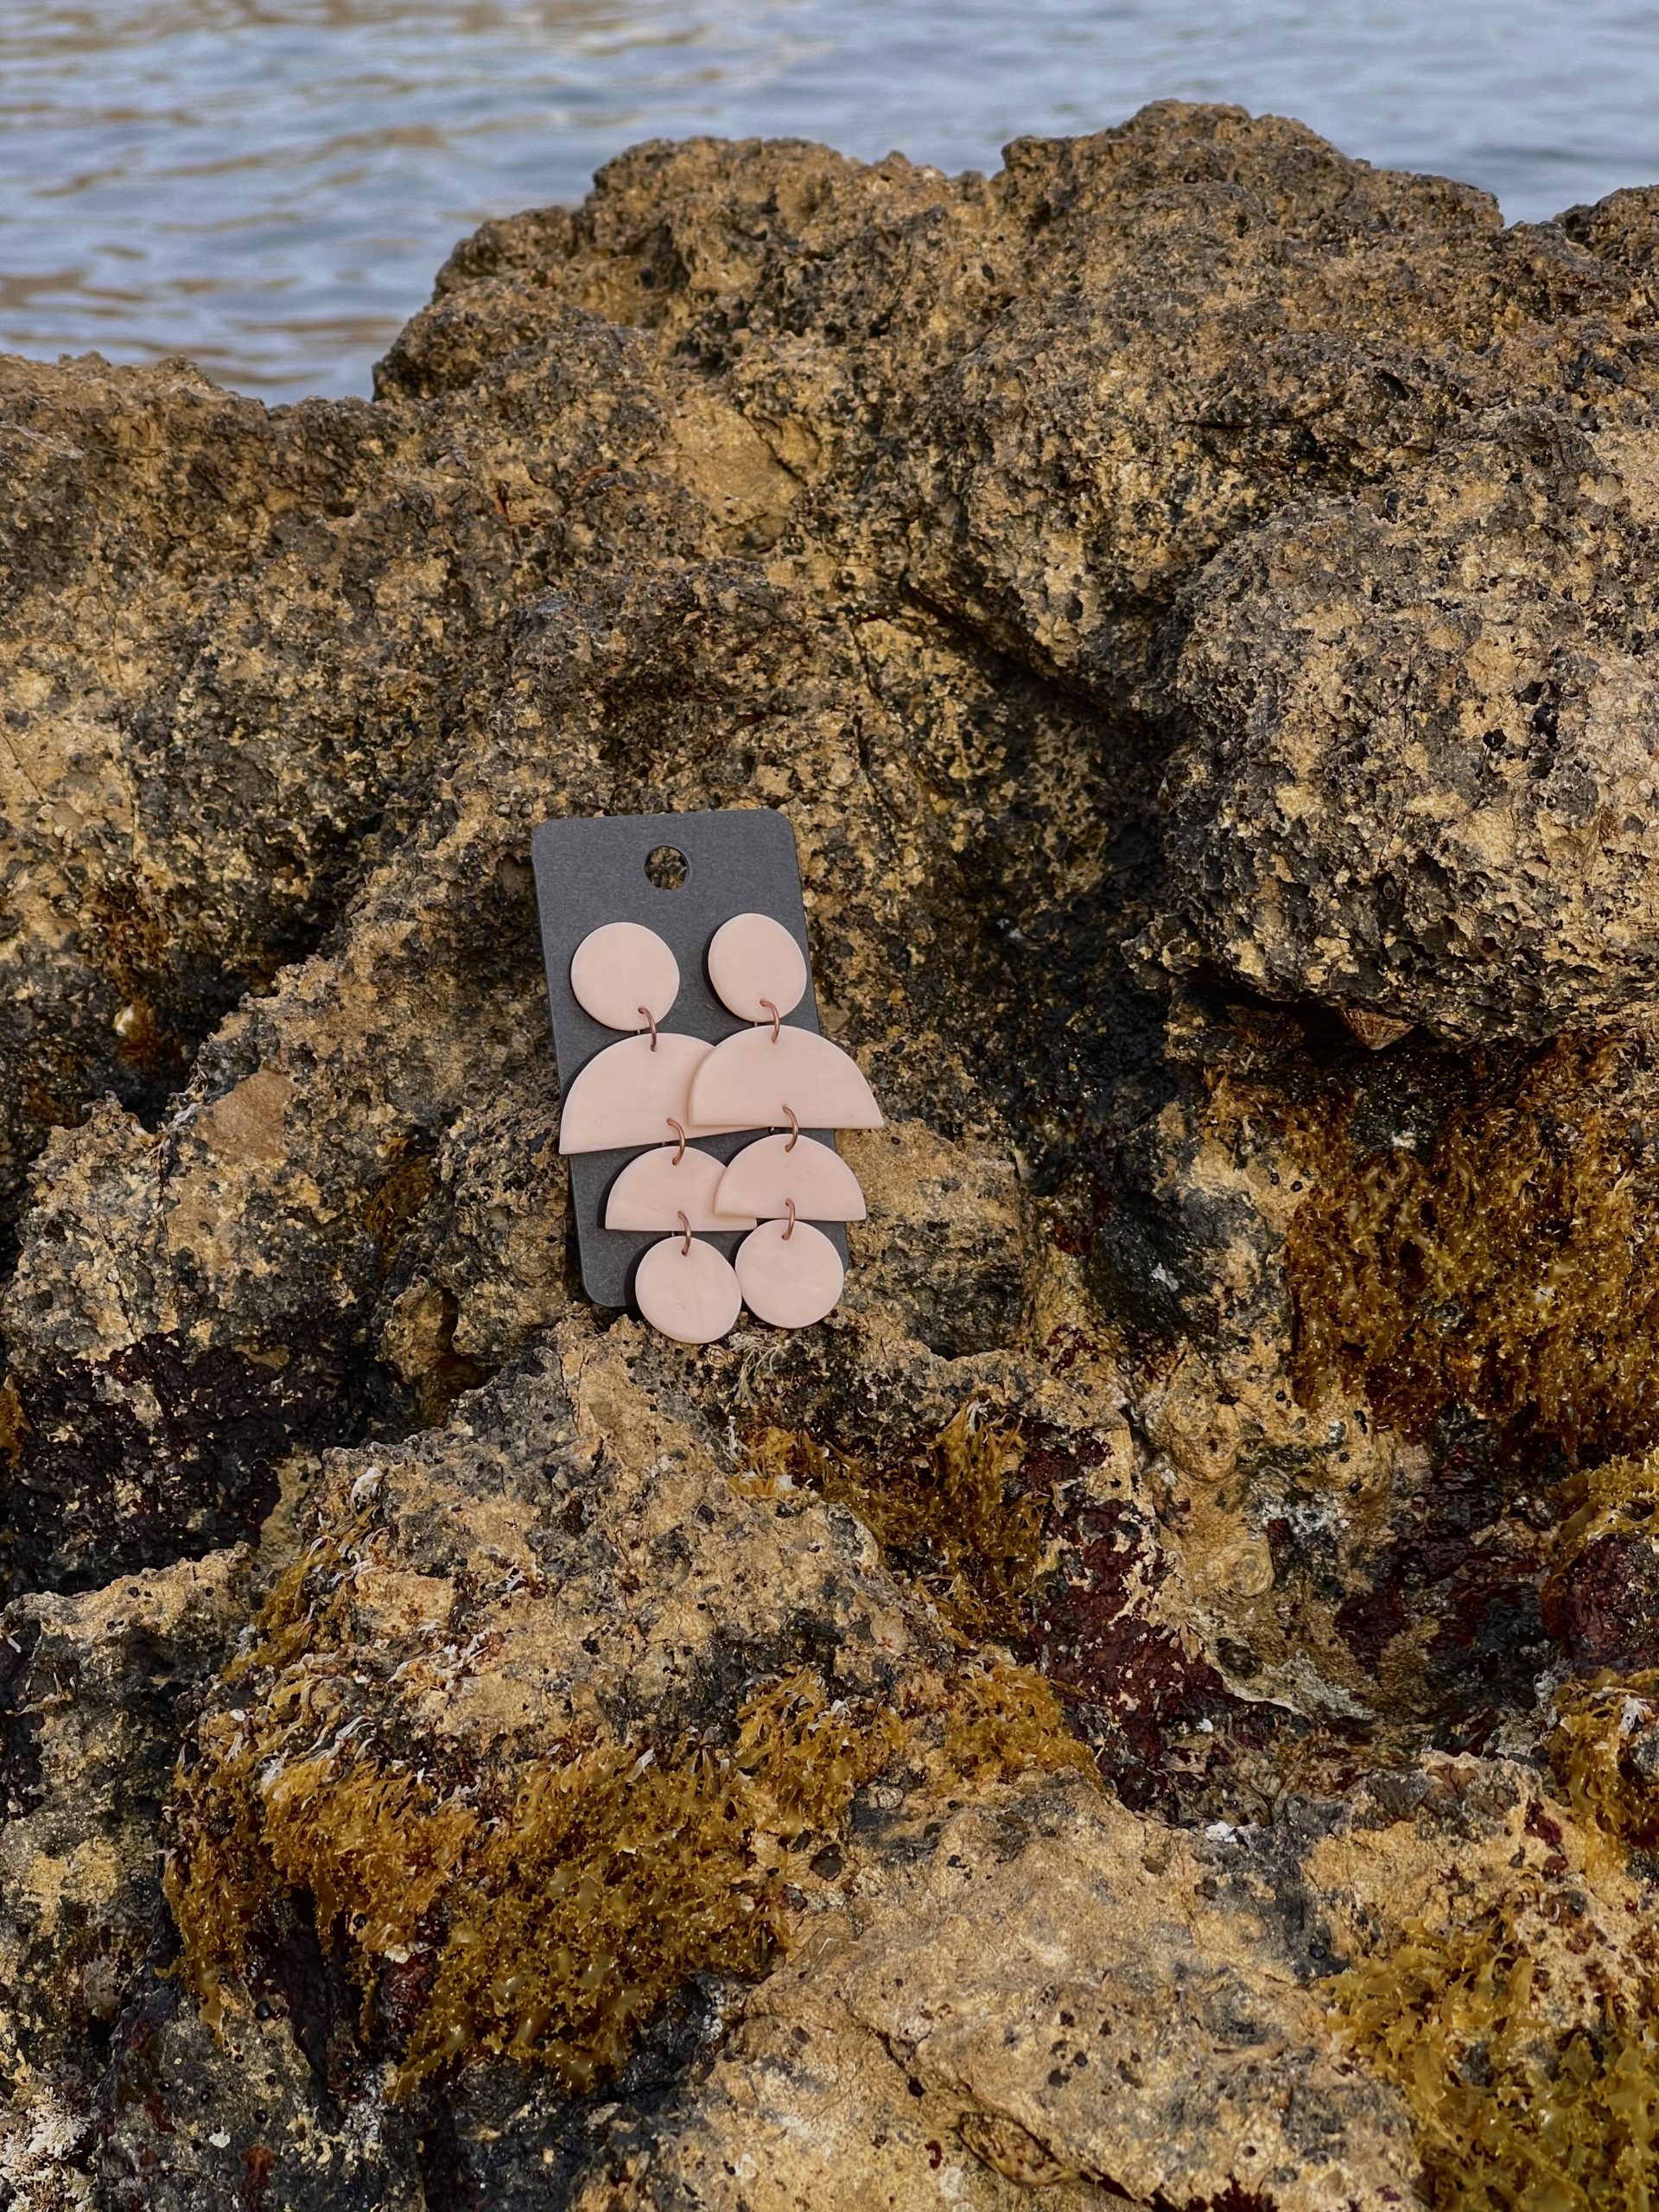 close up - details - photo de près de boucles d'oreilles pendantes rose clair fait main sur un rocher en bord de mer